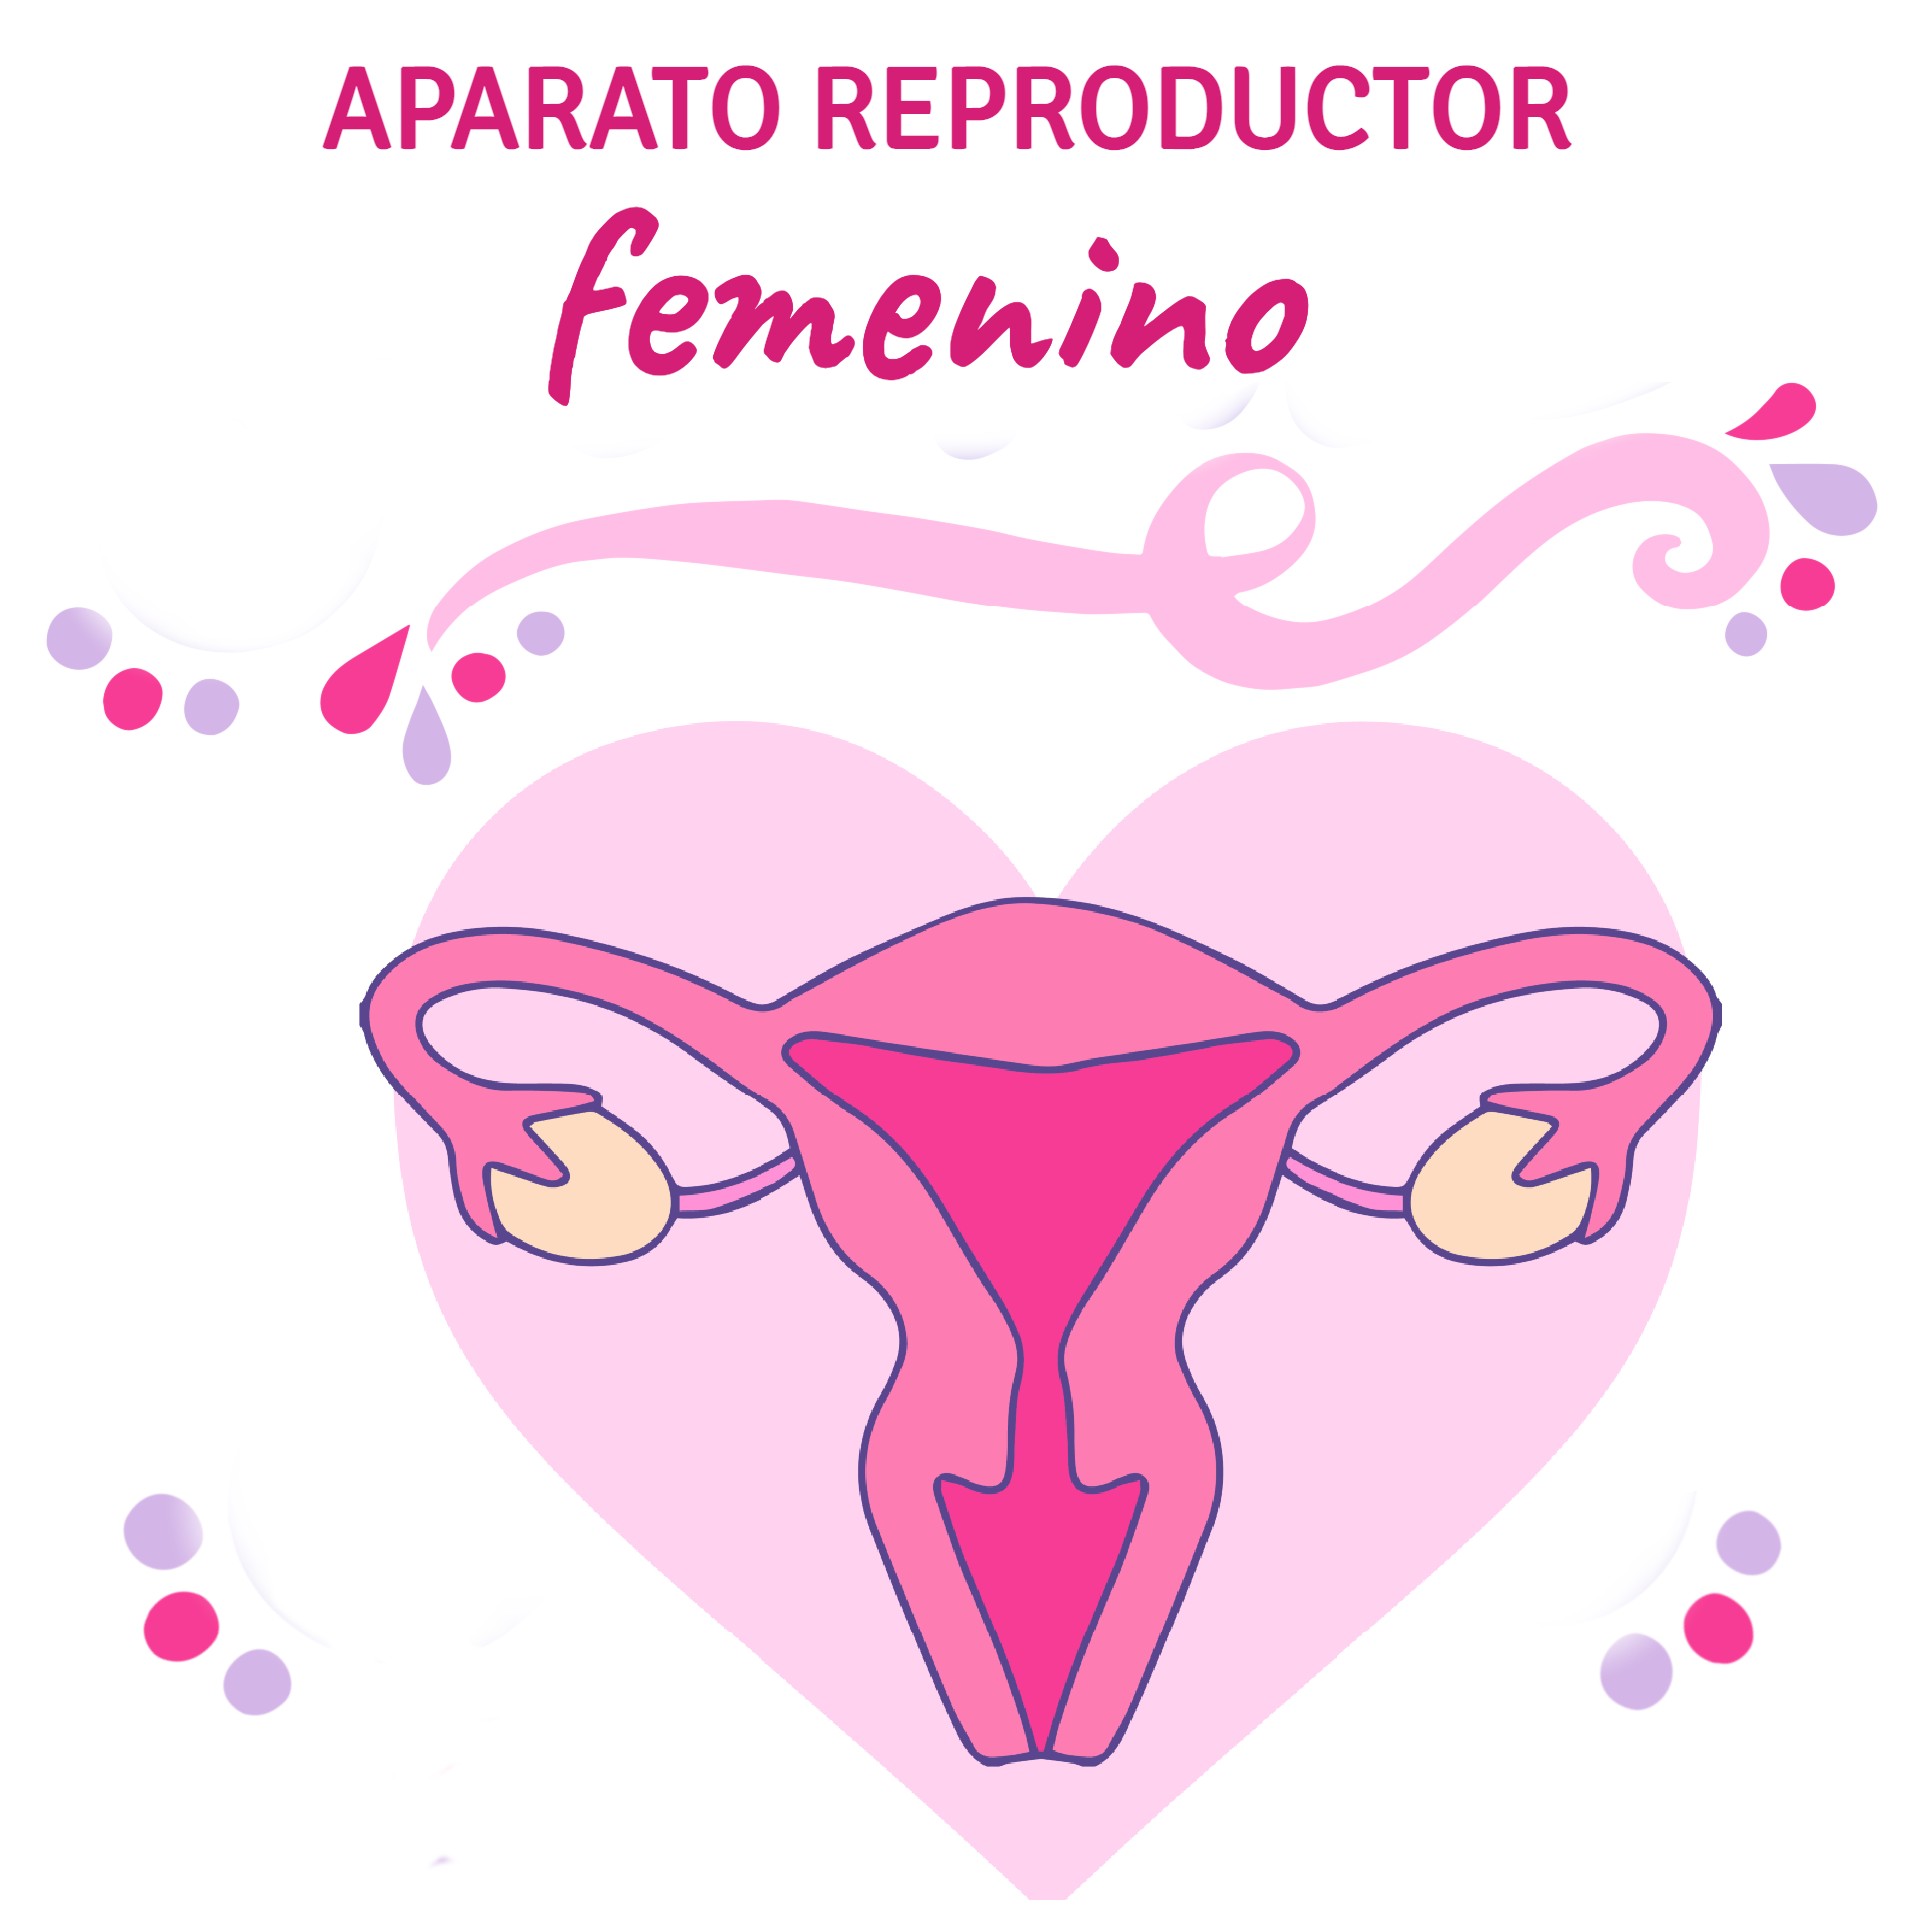 Aparato reproductor femenino | ¿Lo conoces?